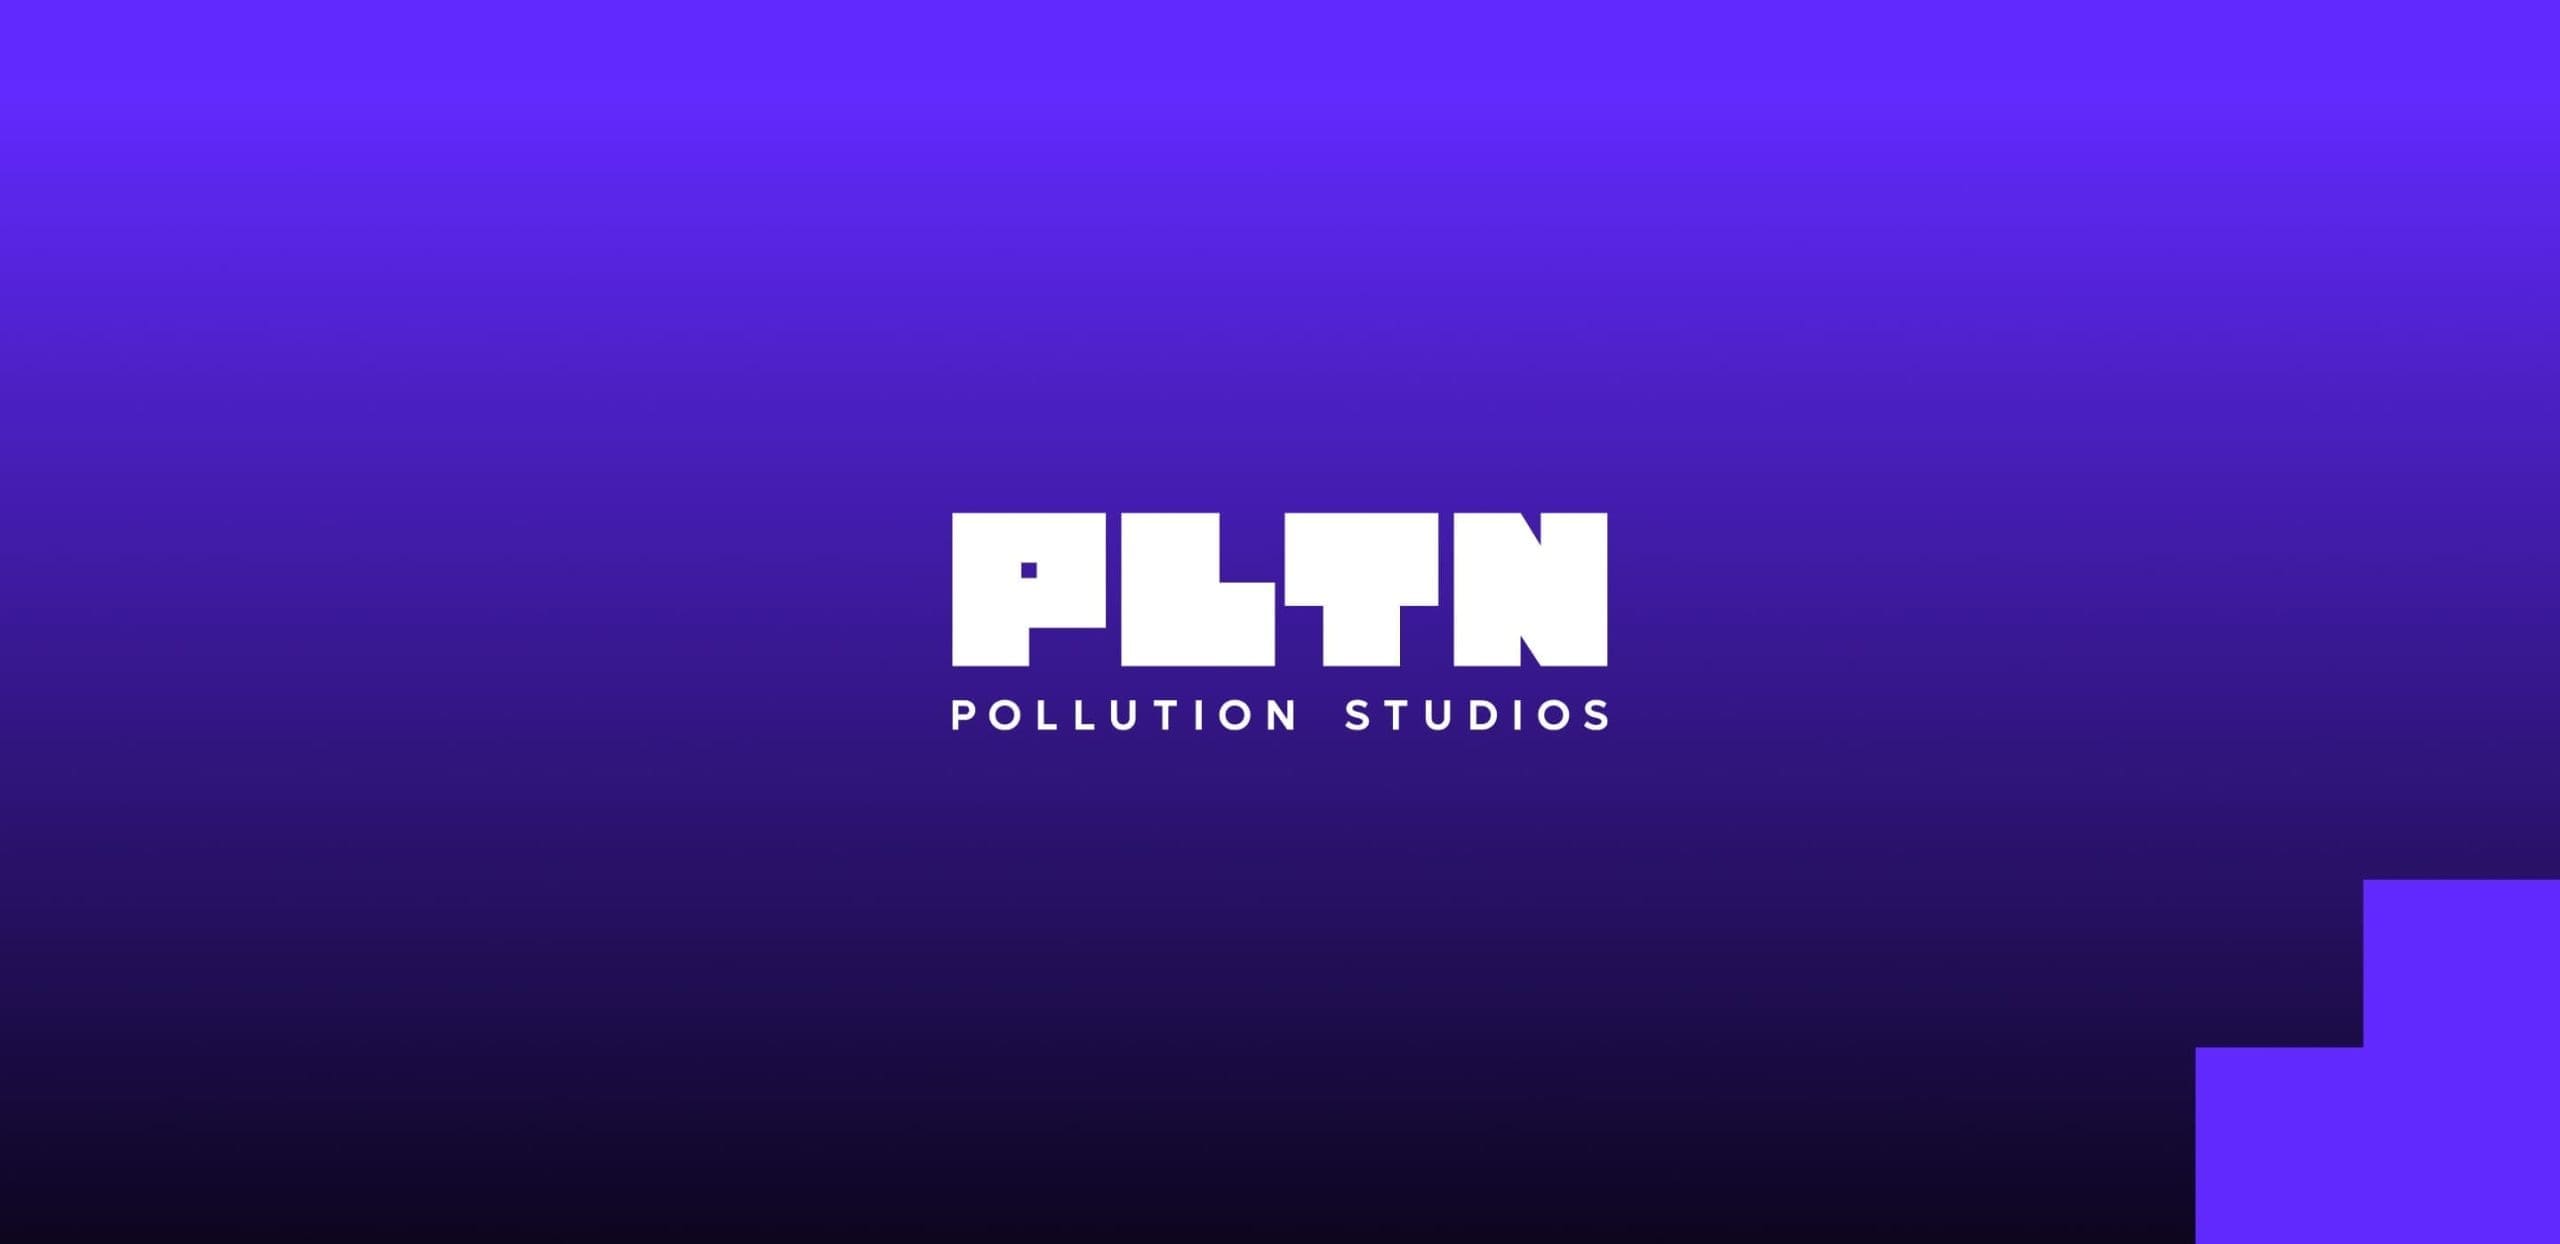 PLTN studio logo header